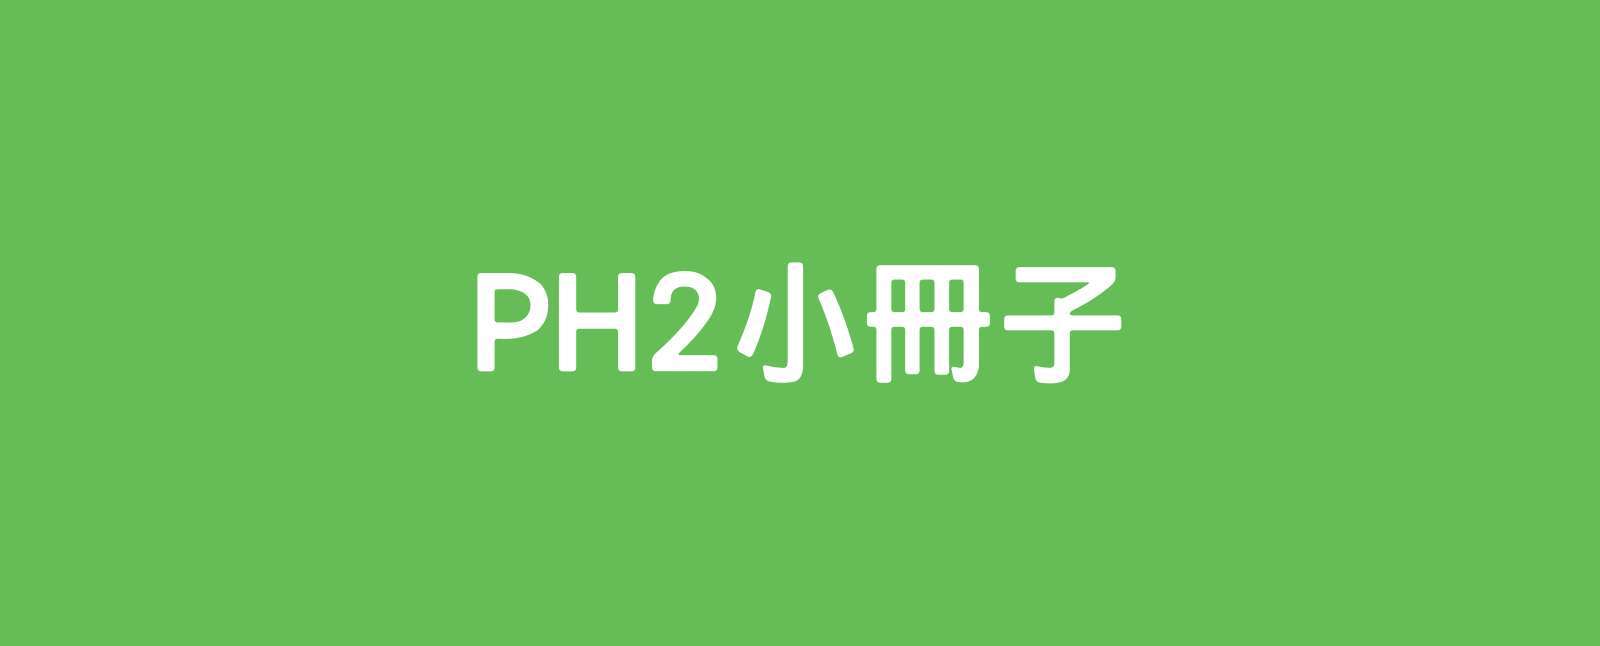 PH2小冊子_M